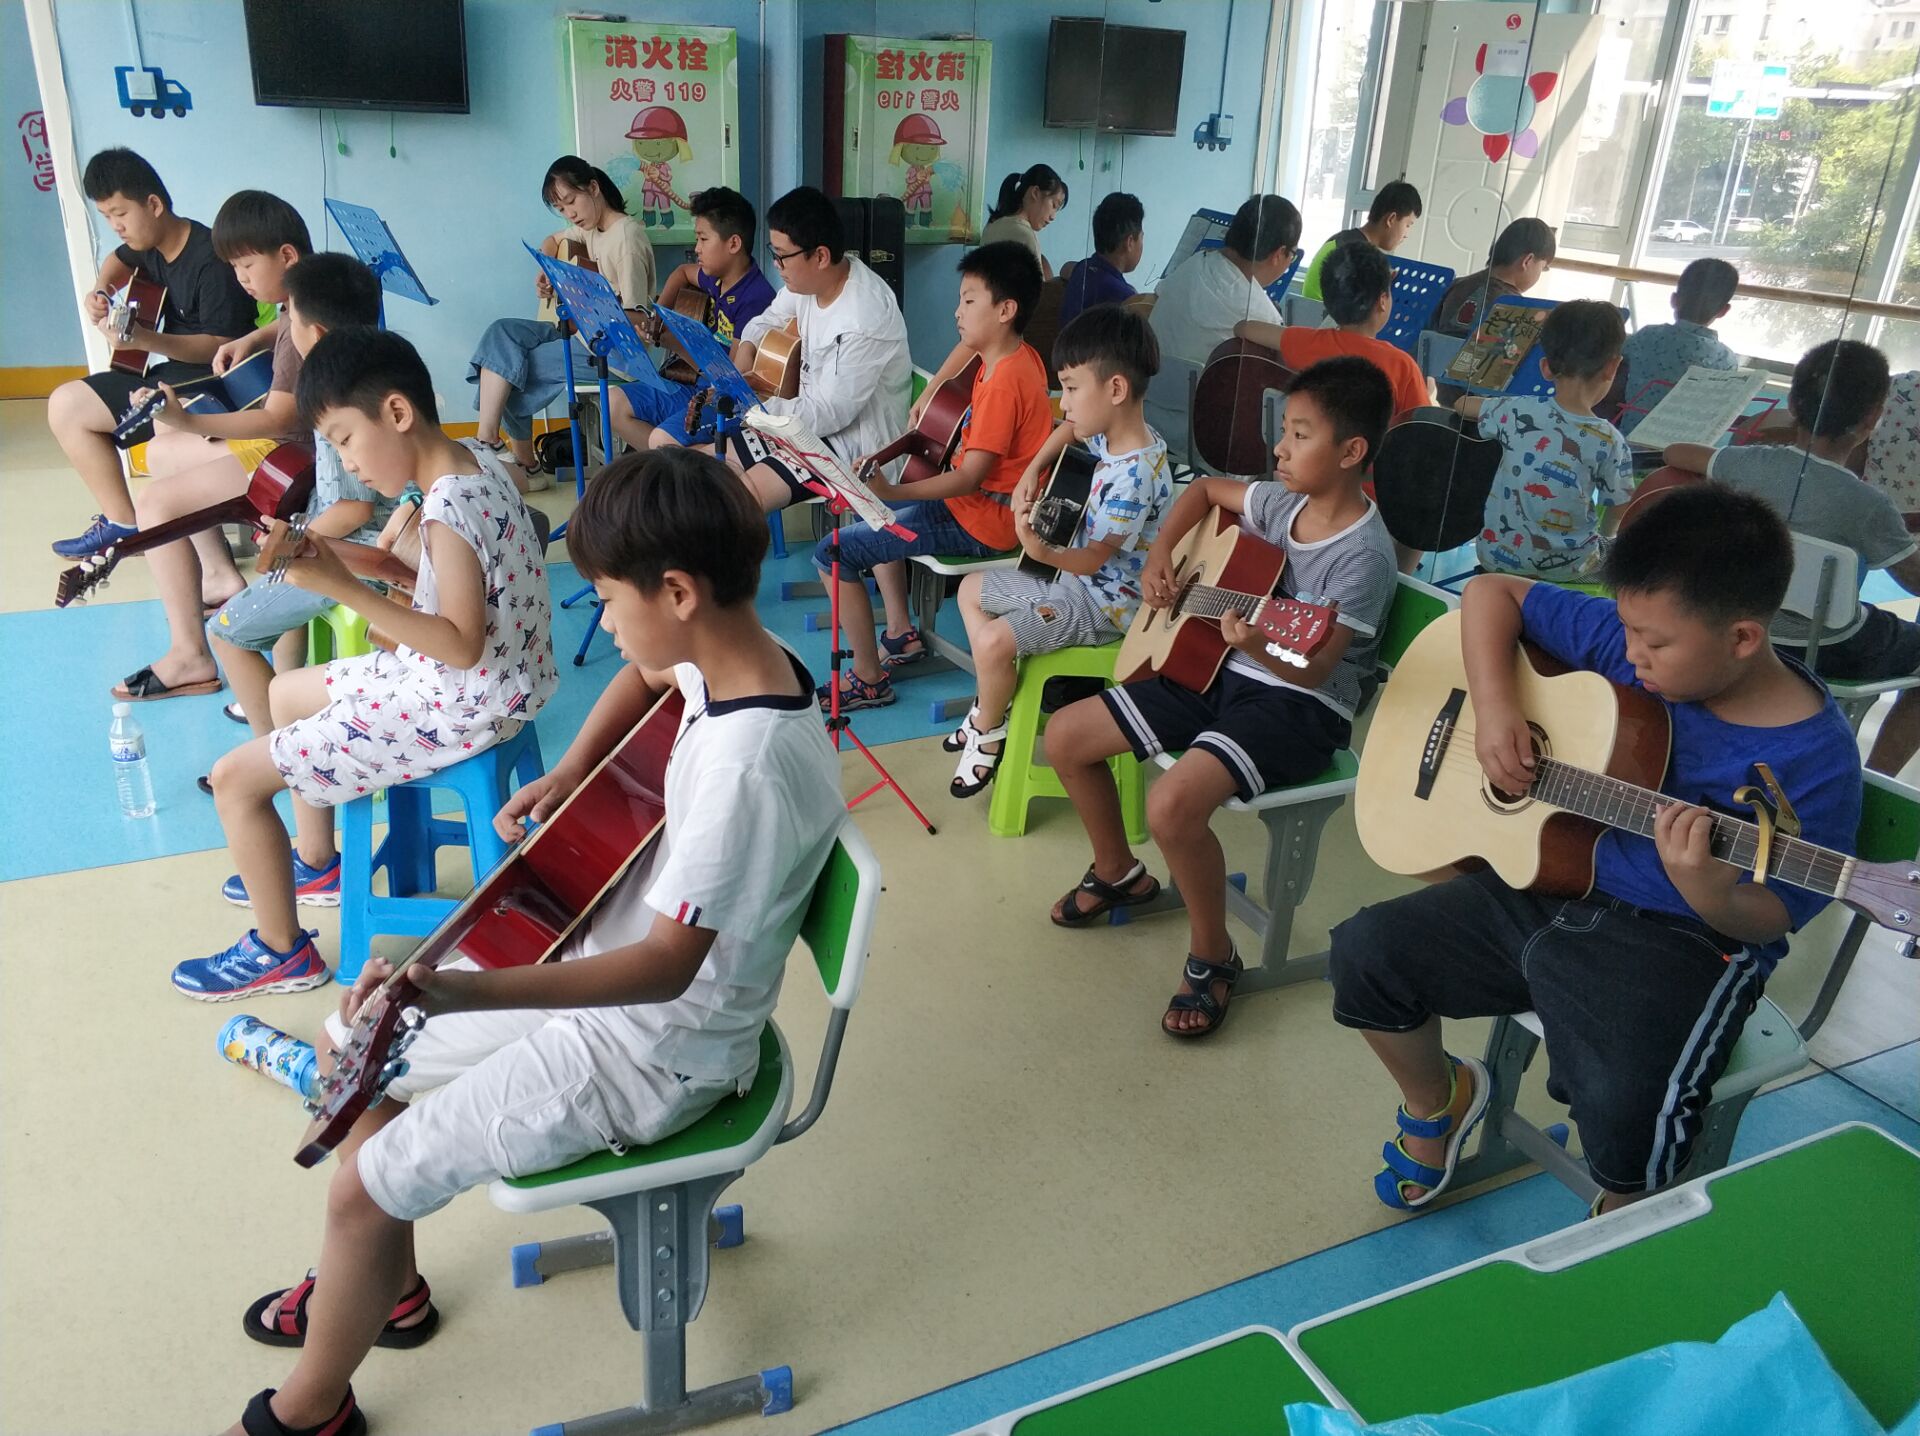 青岛市艺翔嘉文化艺术培训学校常年招生乐器班声乐艺考班等